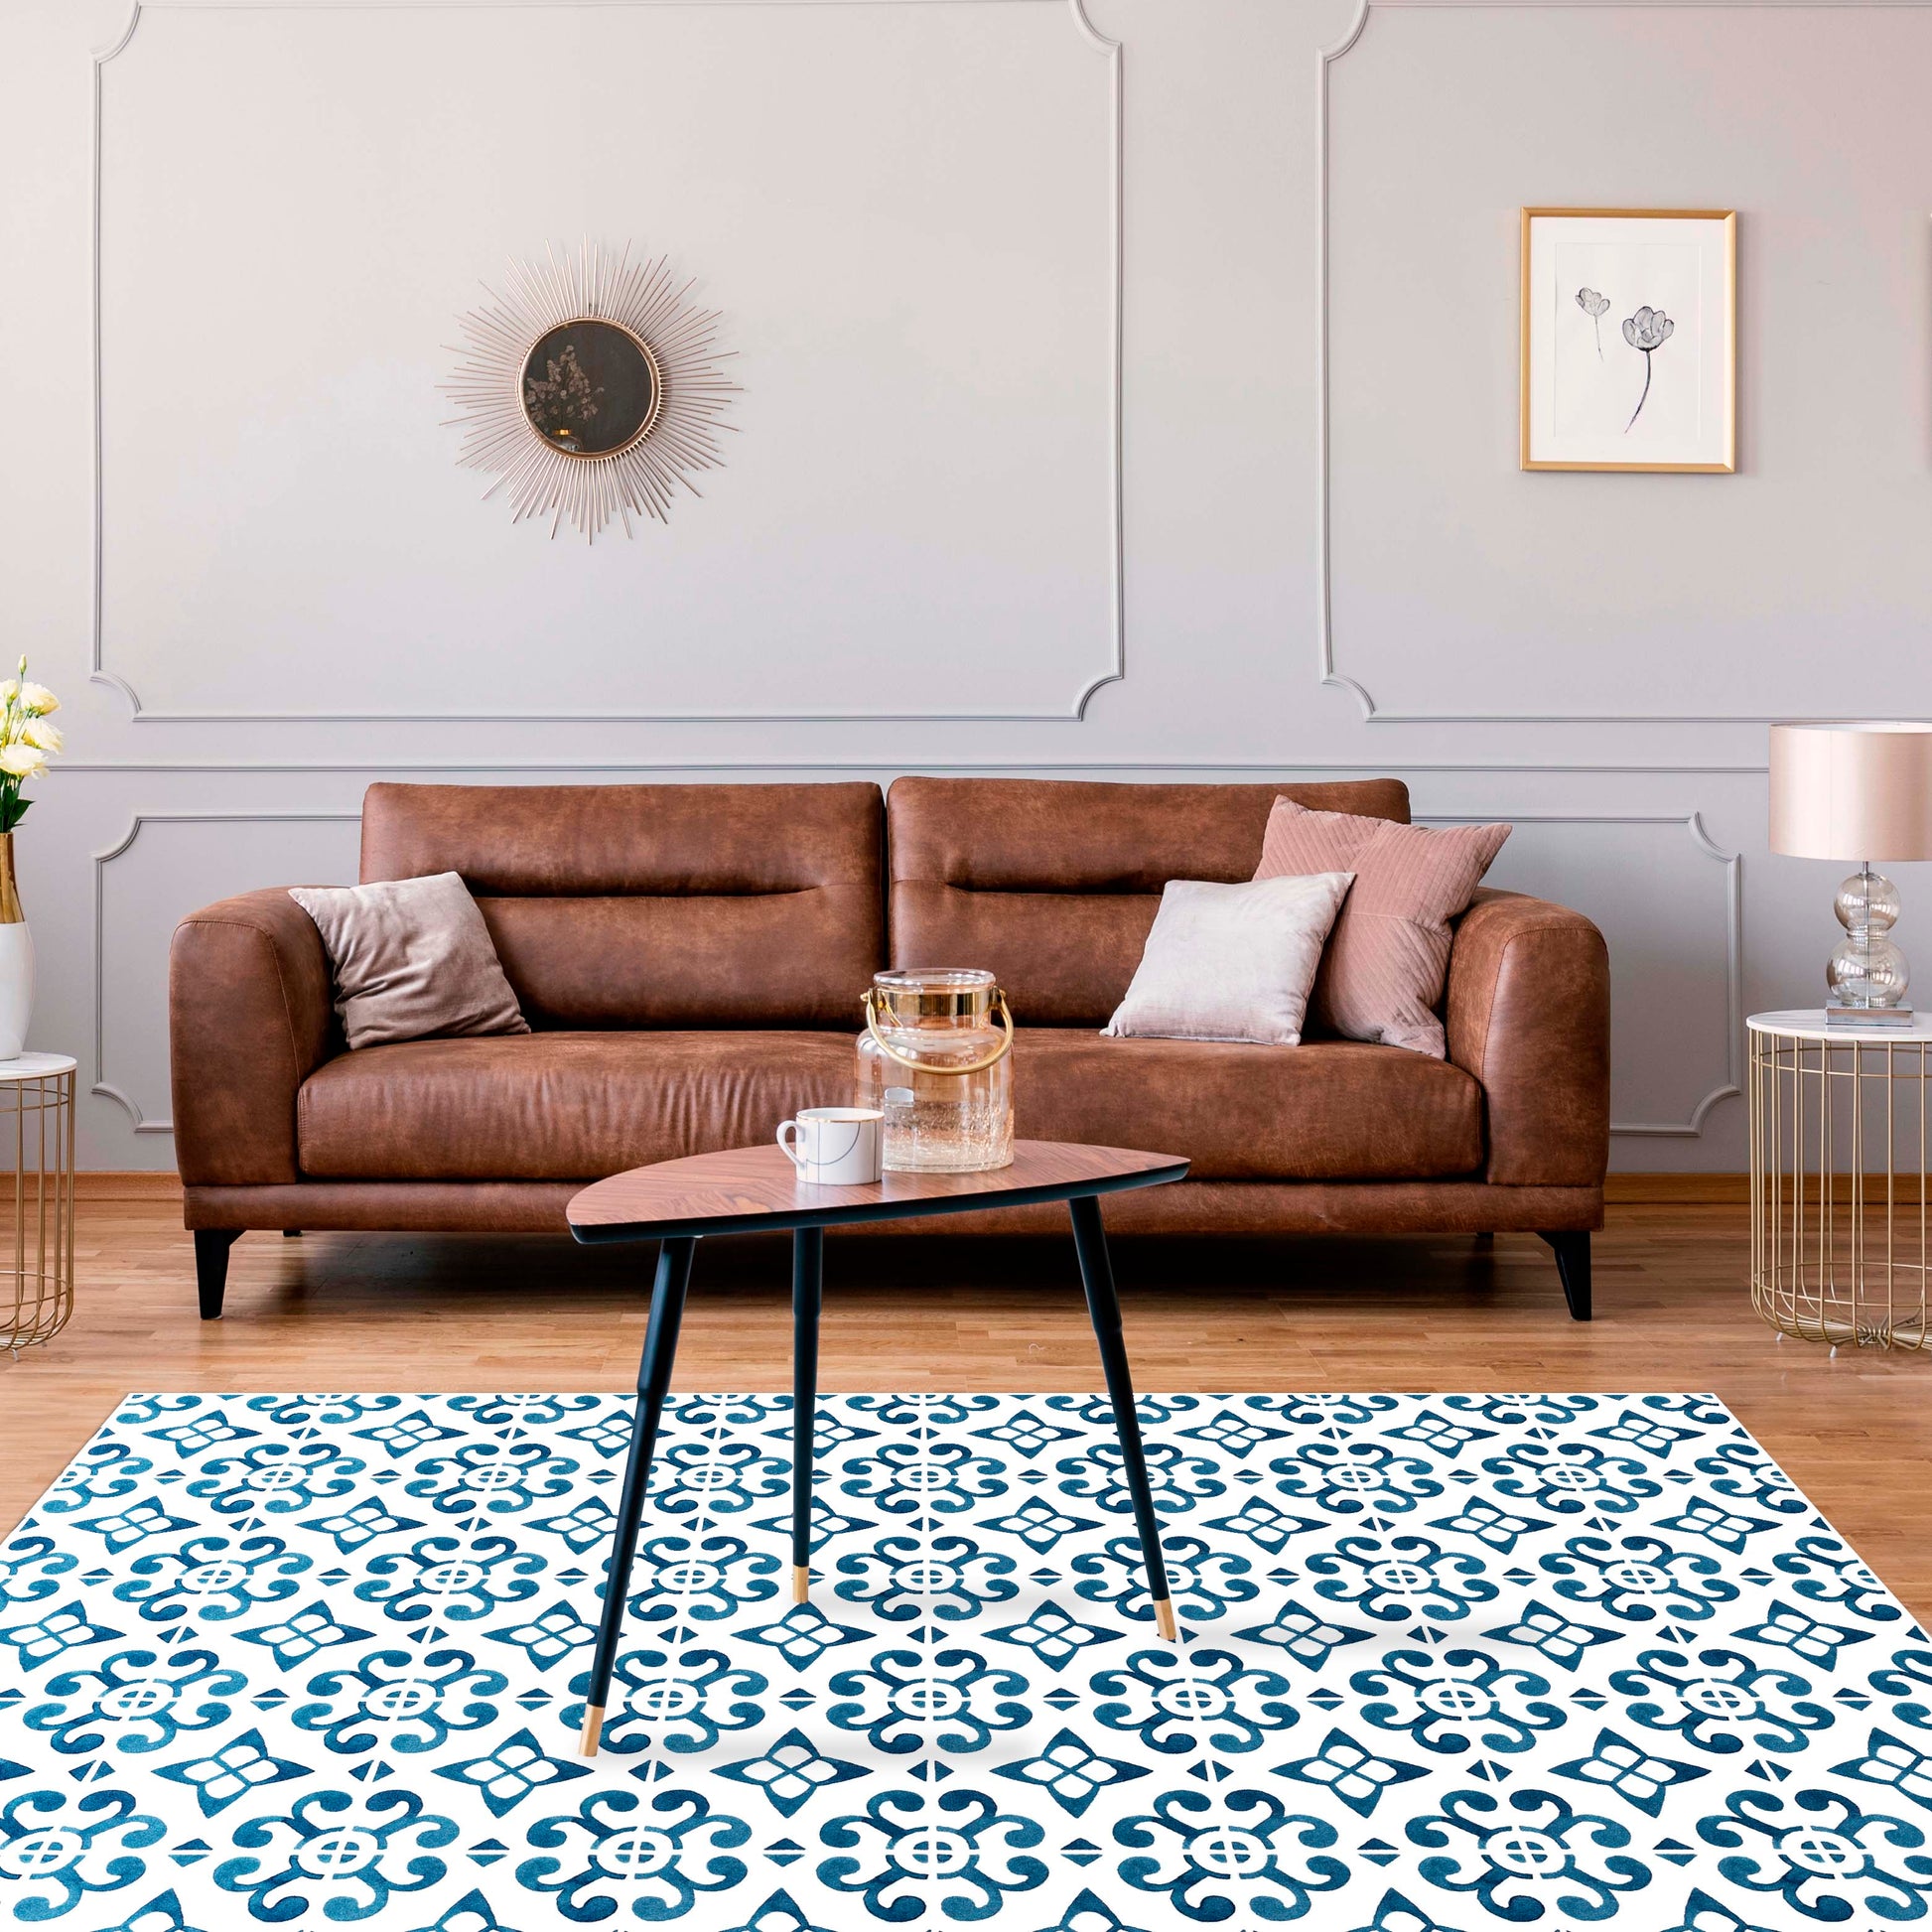 6 alfombras vinílicas perfectas para decorar y proteger tu cocina